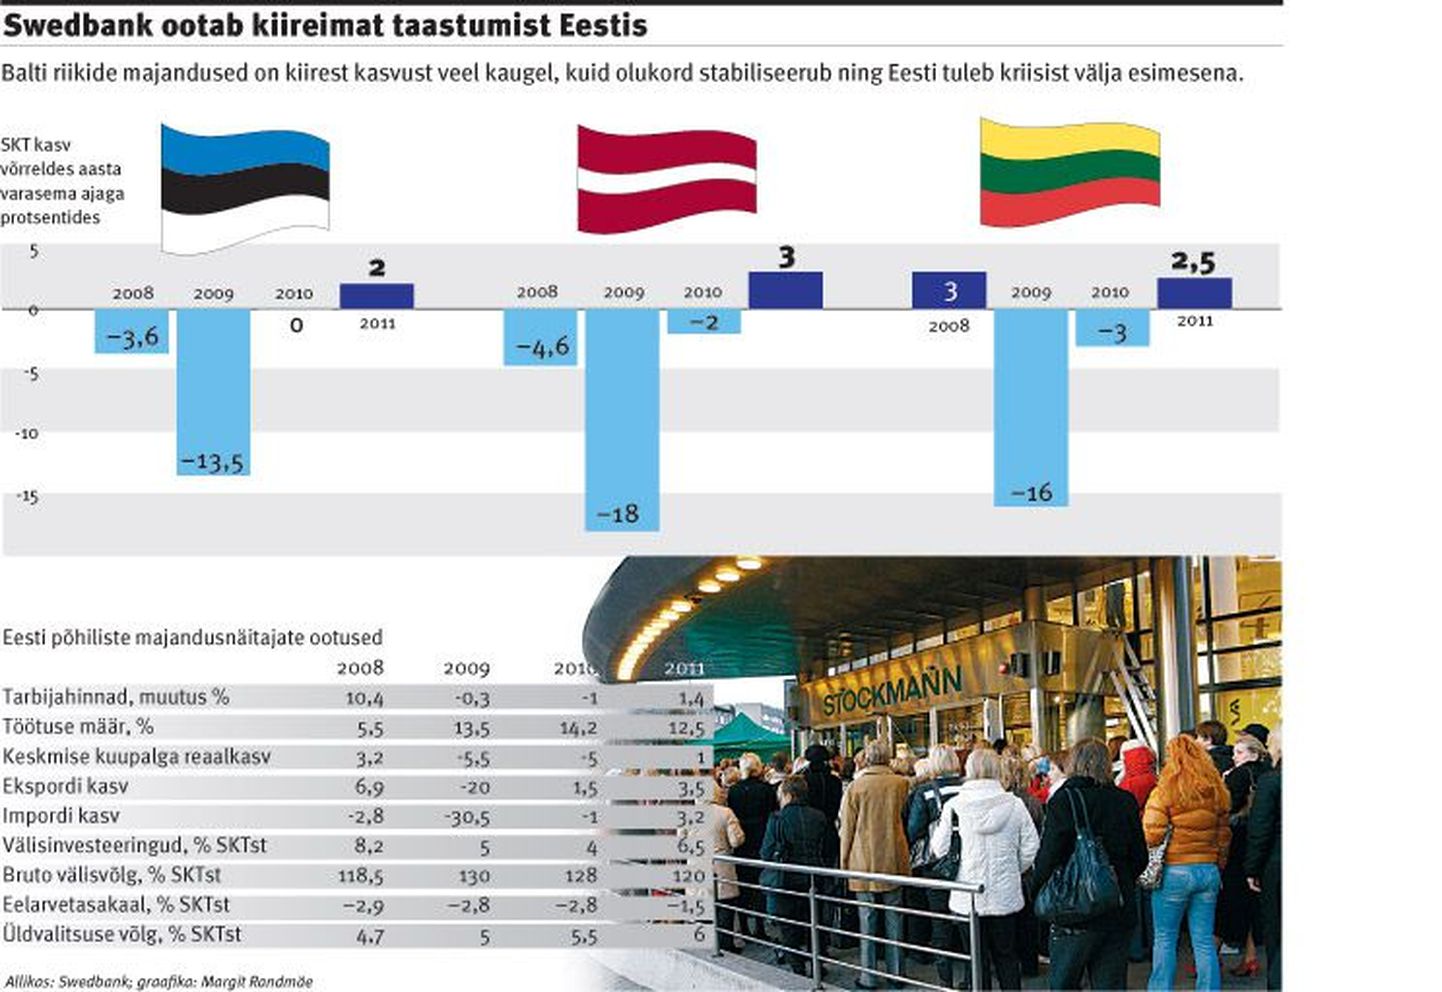 Swedbank ootab kiireimat taastumist Eestis.